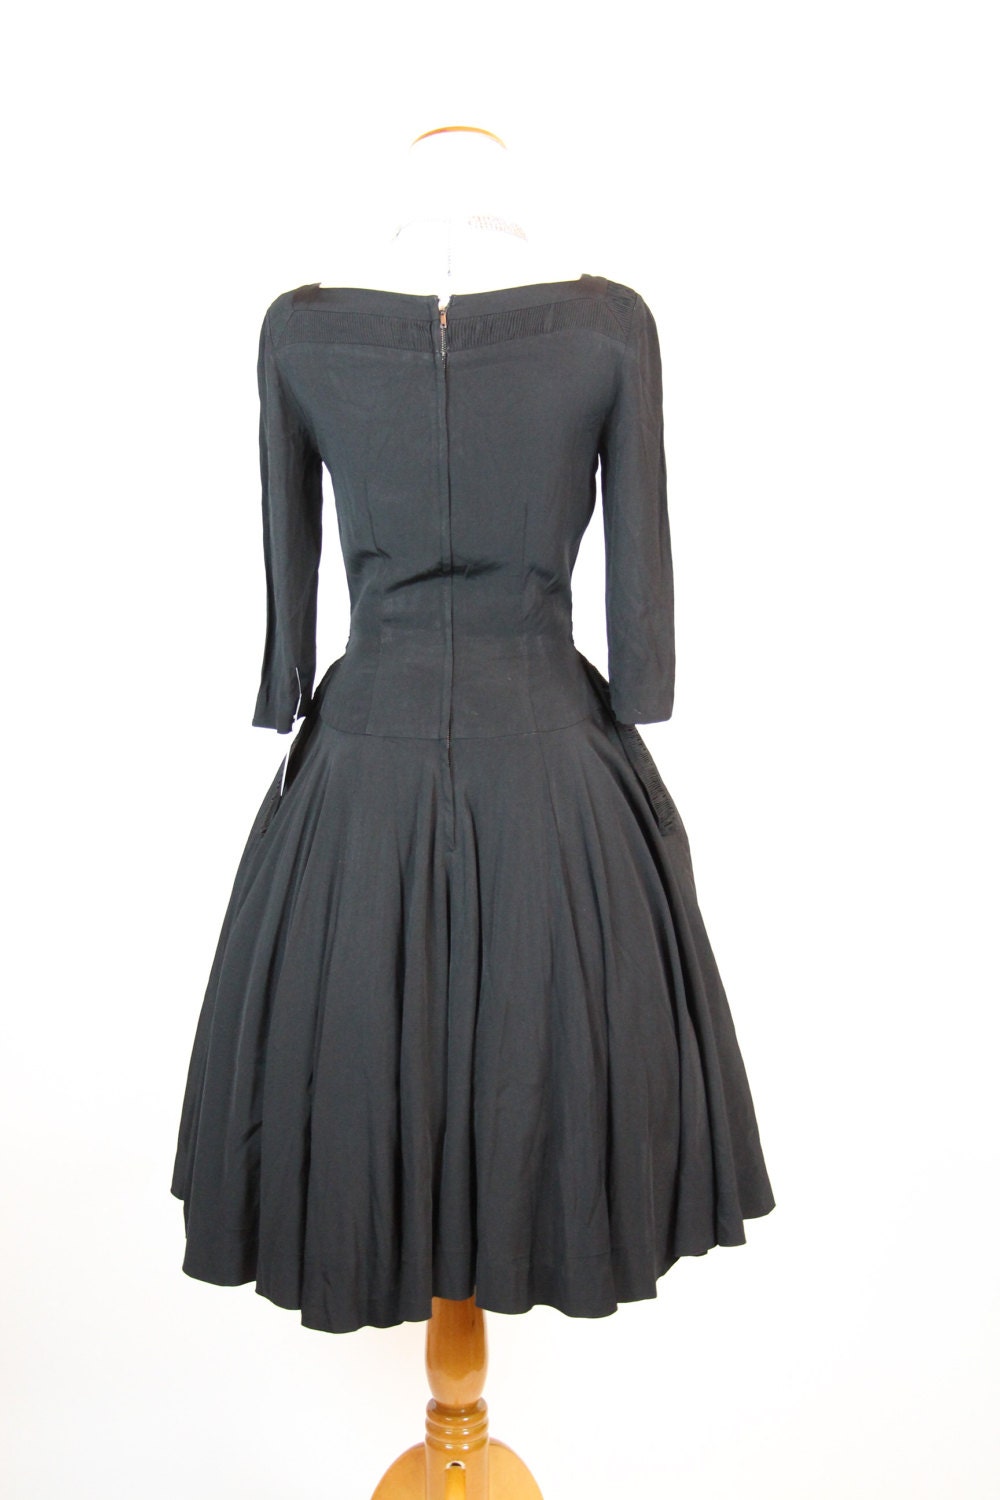 Vintage 1950s Rockabilly Dress Black Crepe Ruched Trim - Etsy